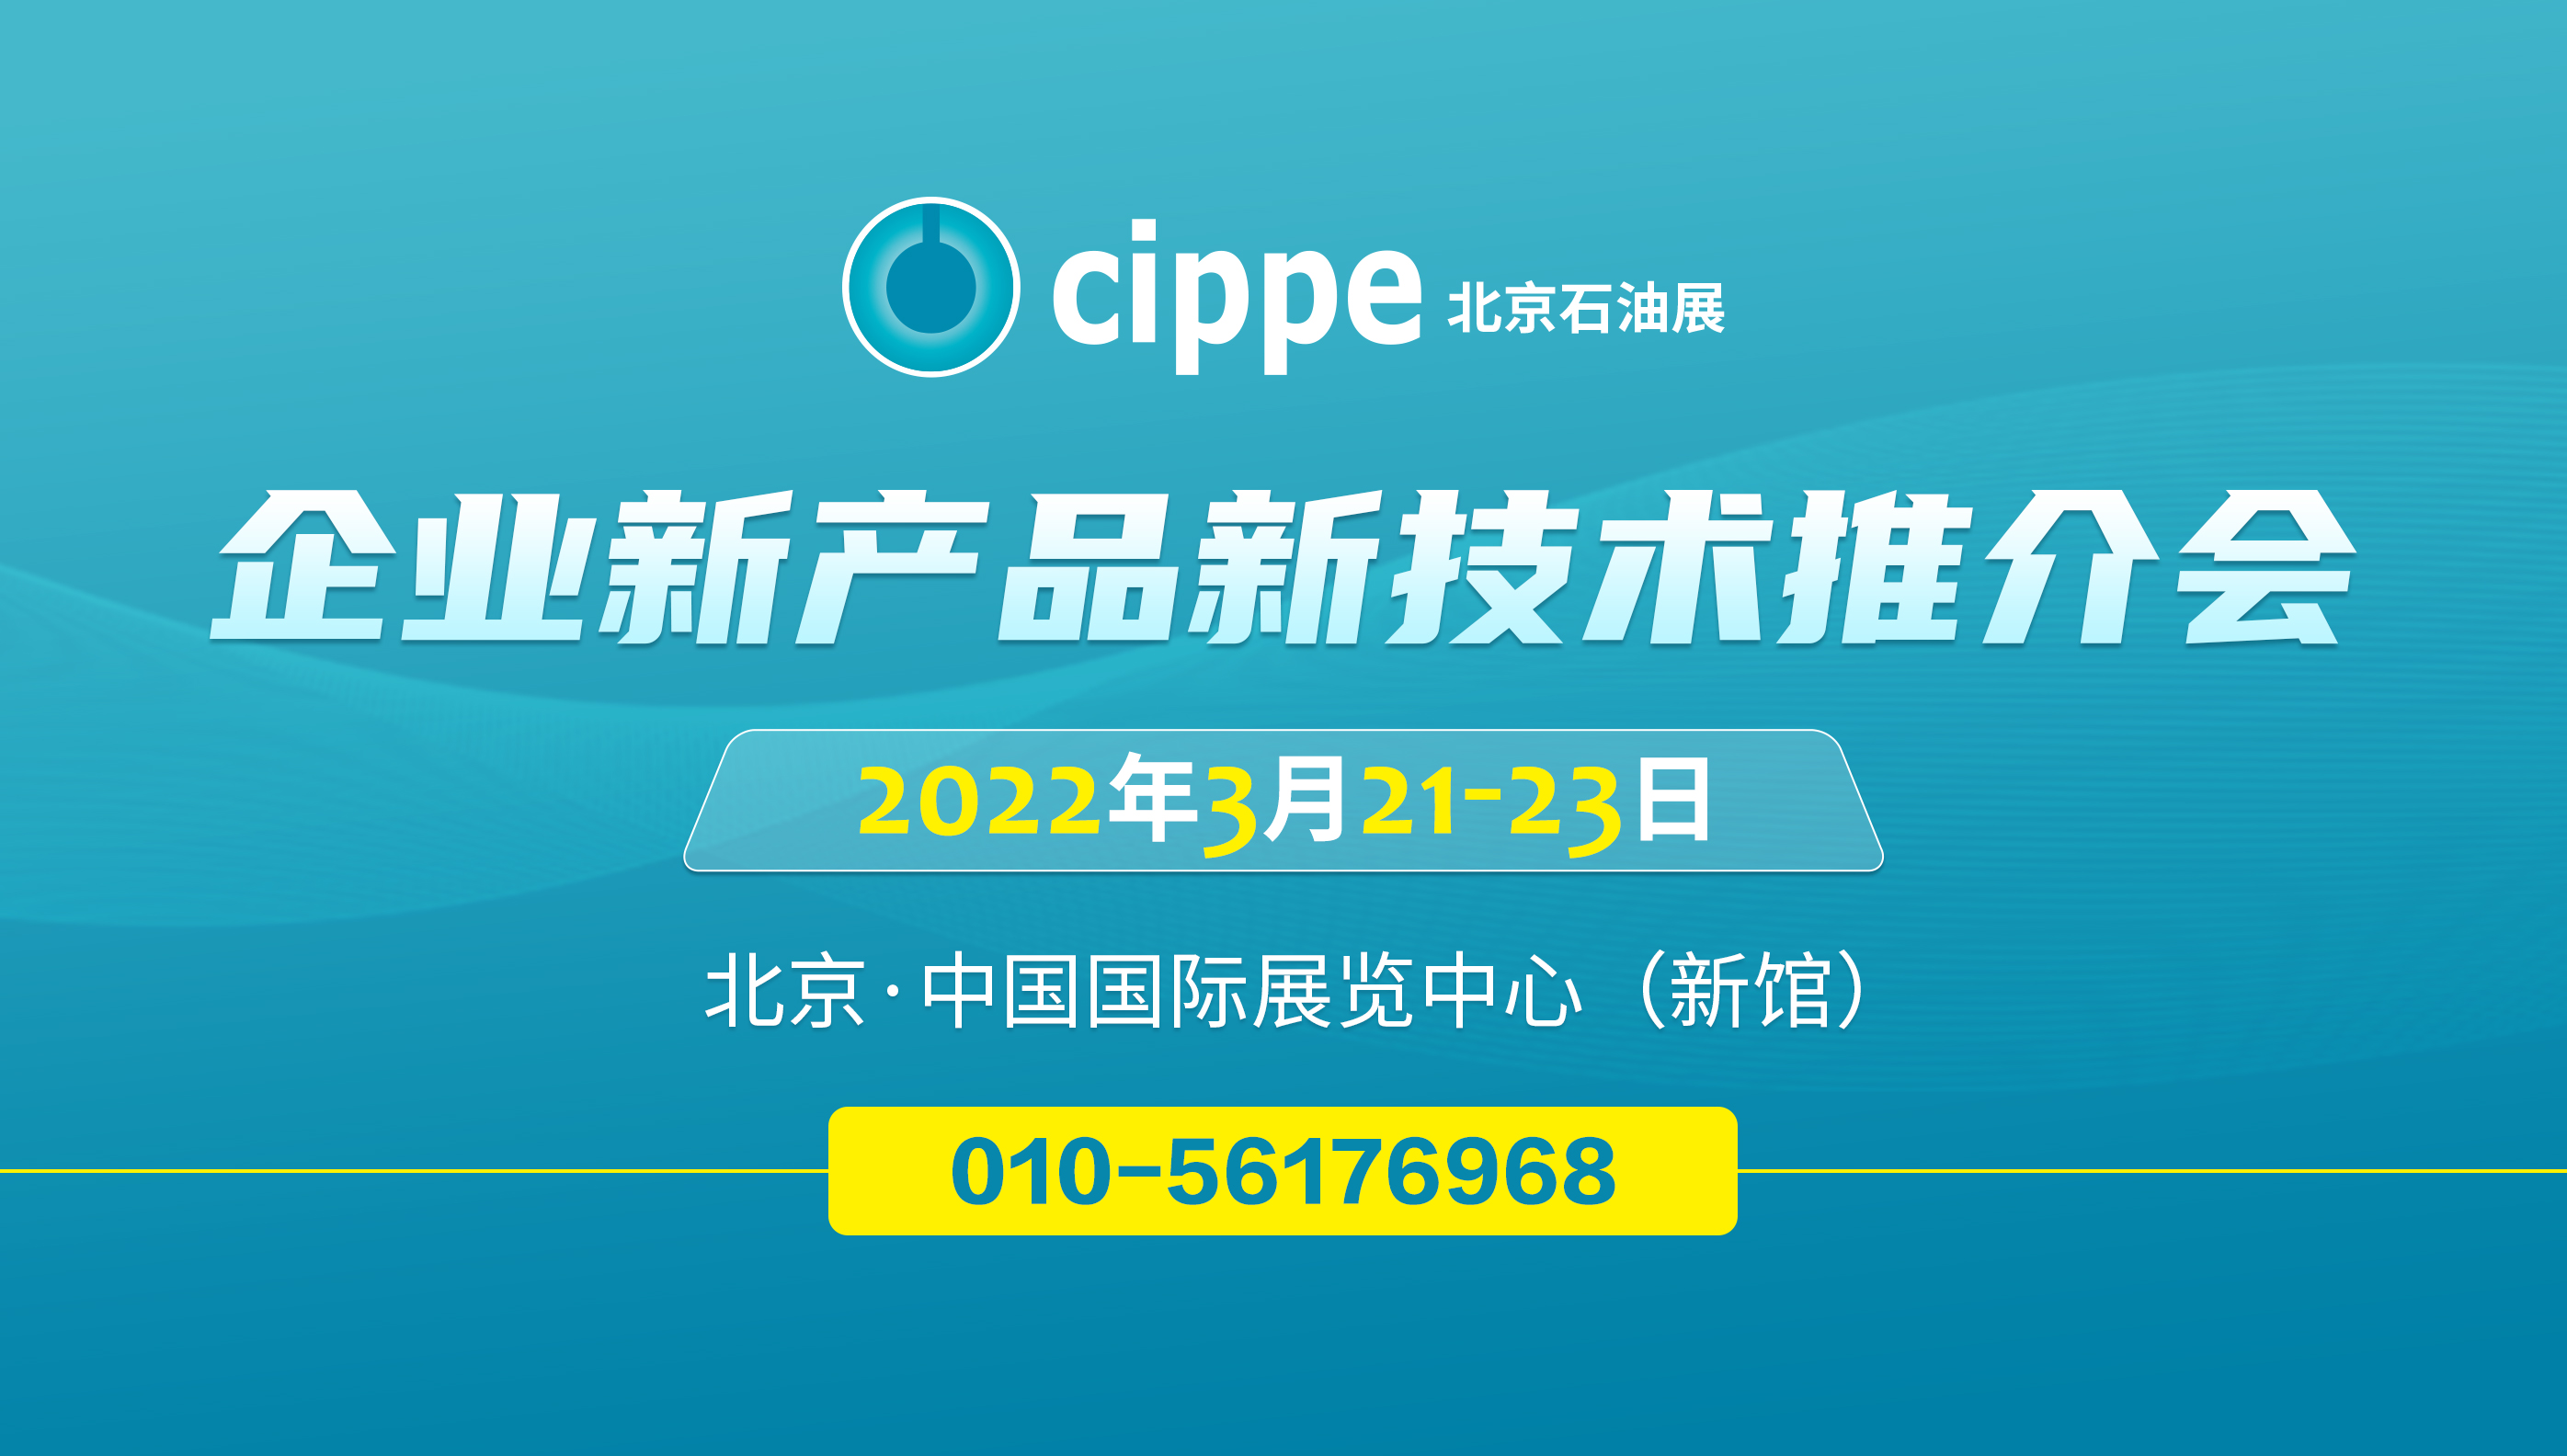 cippe2022企业新产品新技术推介会明年3月